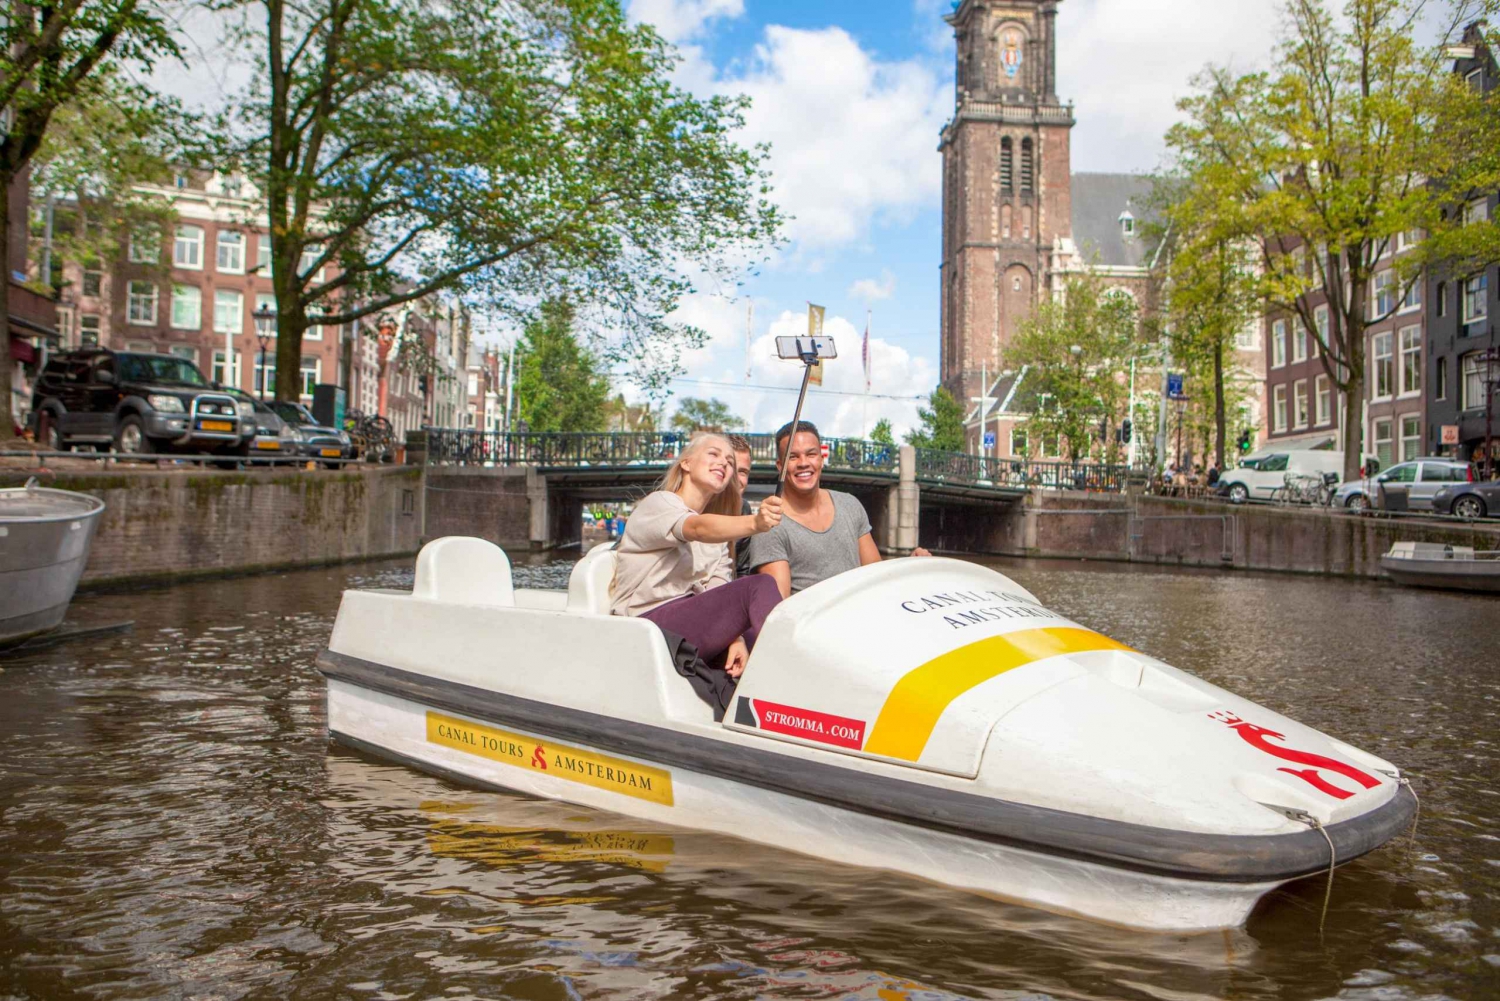 Ámsterdam: alquiler de un hidropedal durante 1 hora